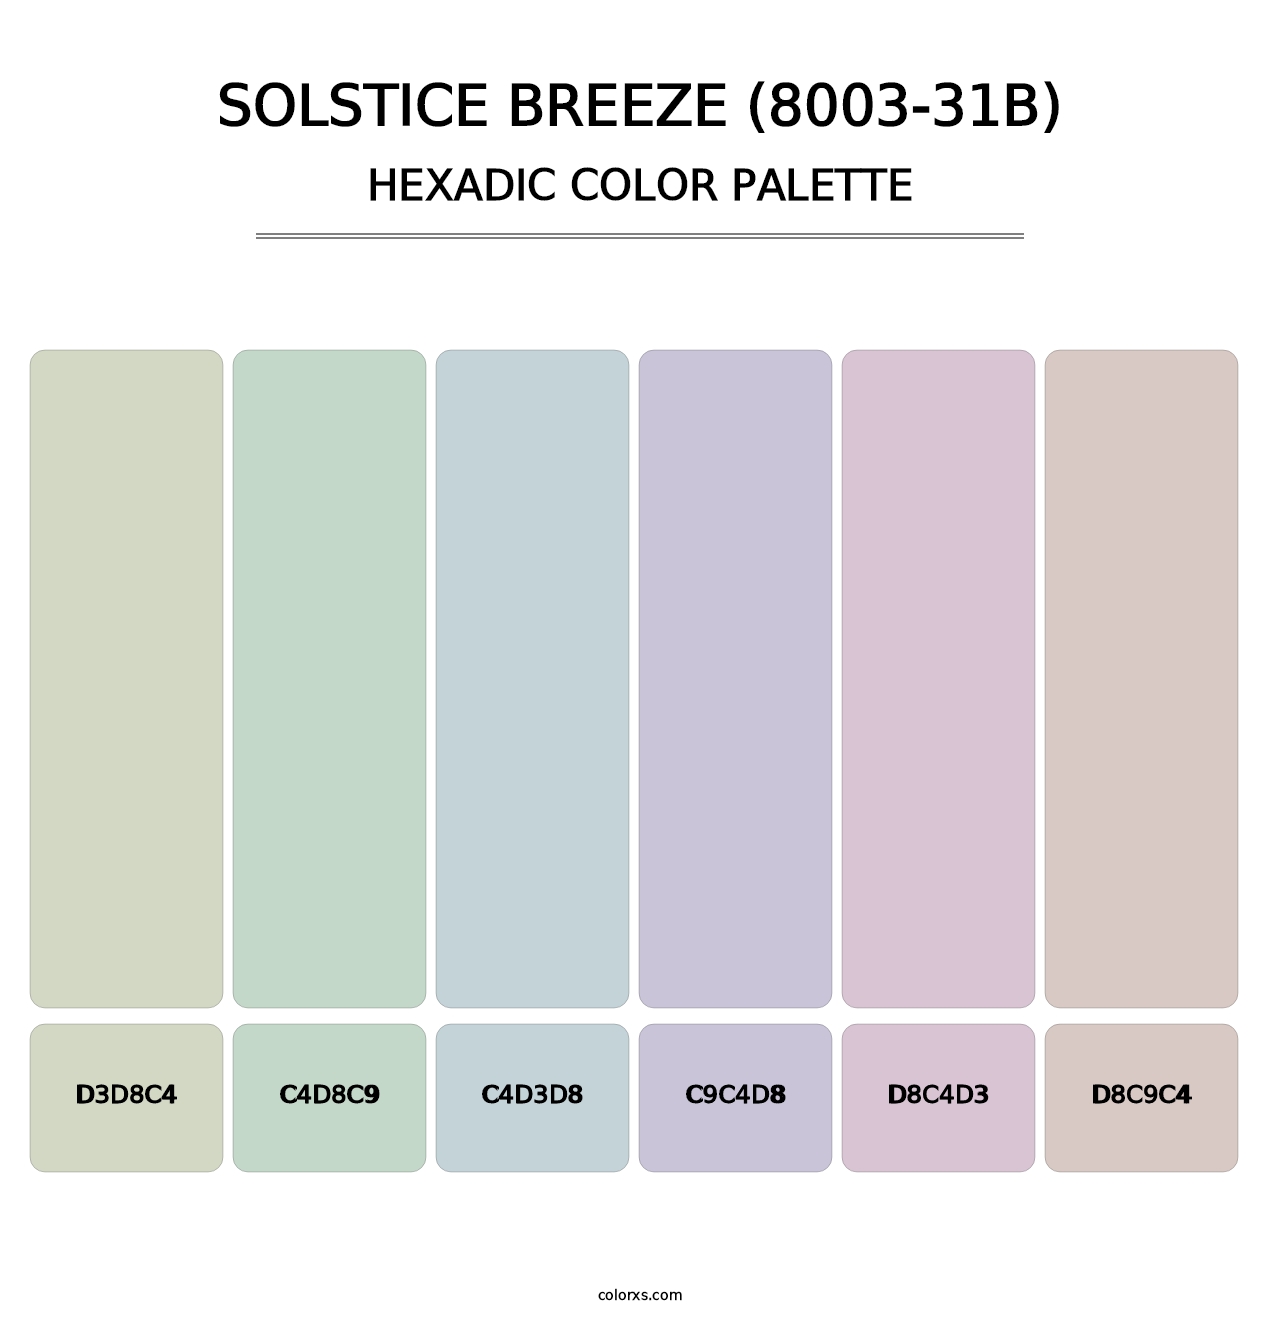 Solstice Breeze (8003-31B) - Hexadic Color Palette